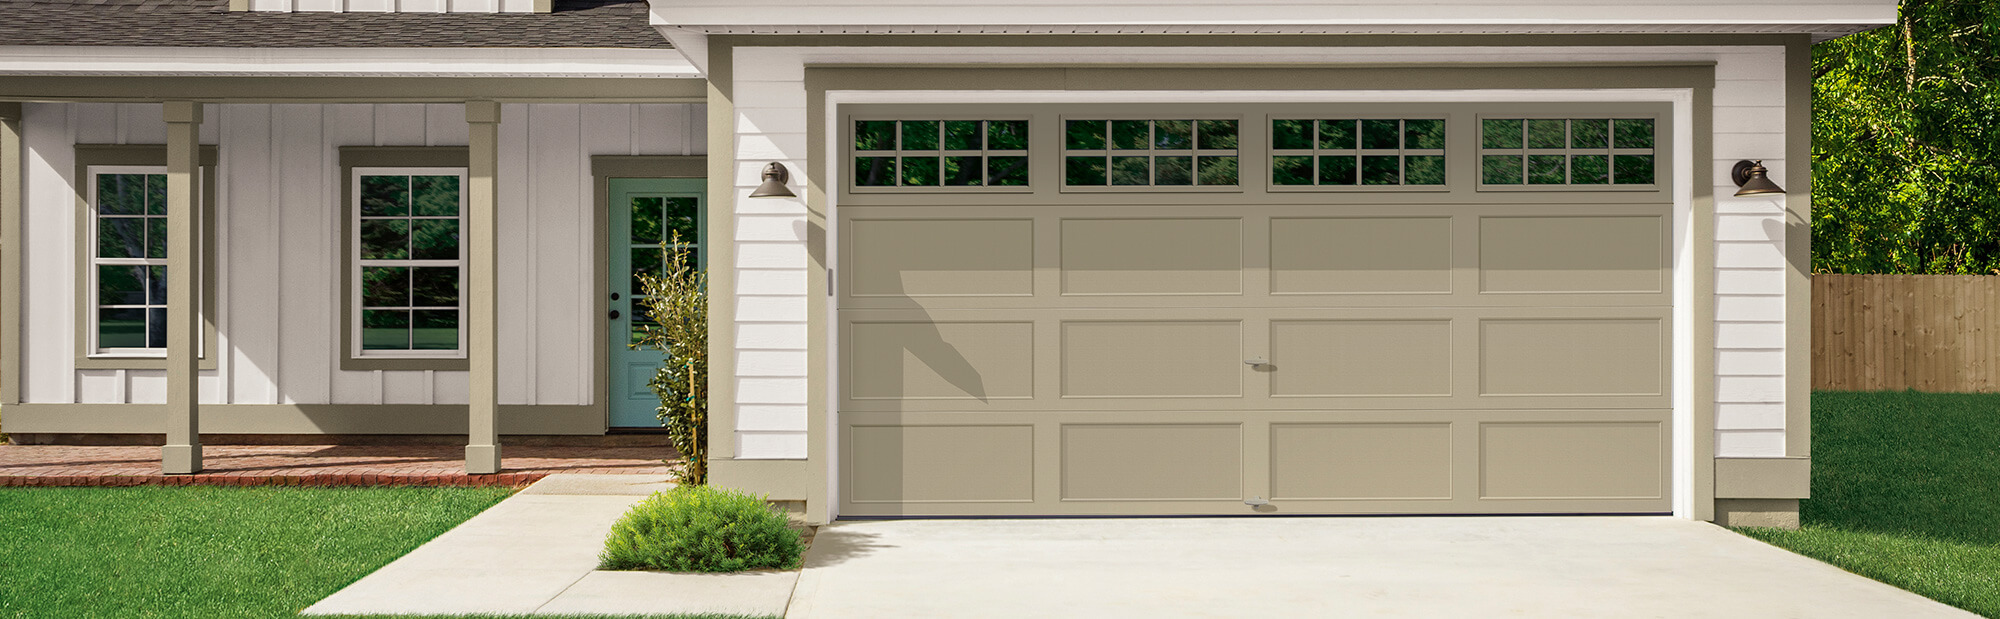  CLOPAY BRIDGEPORT - Recessed Panel Shaker Style Garage Doors